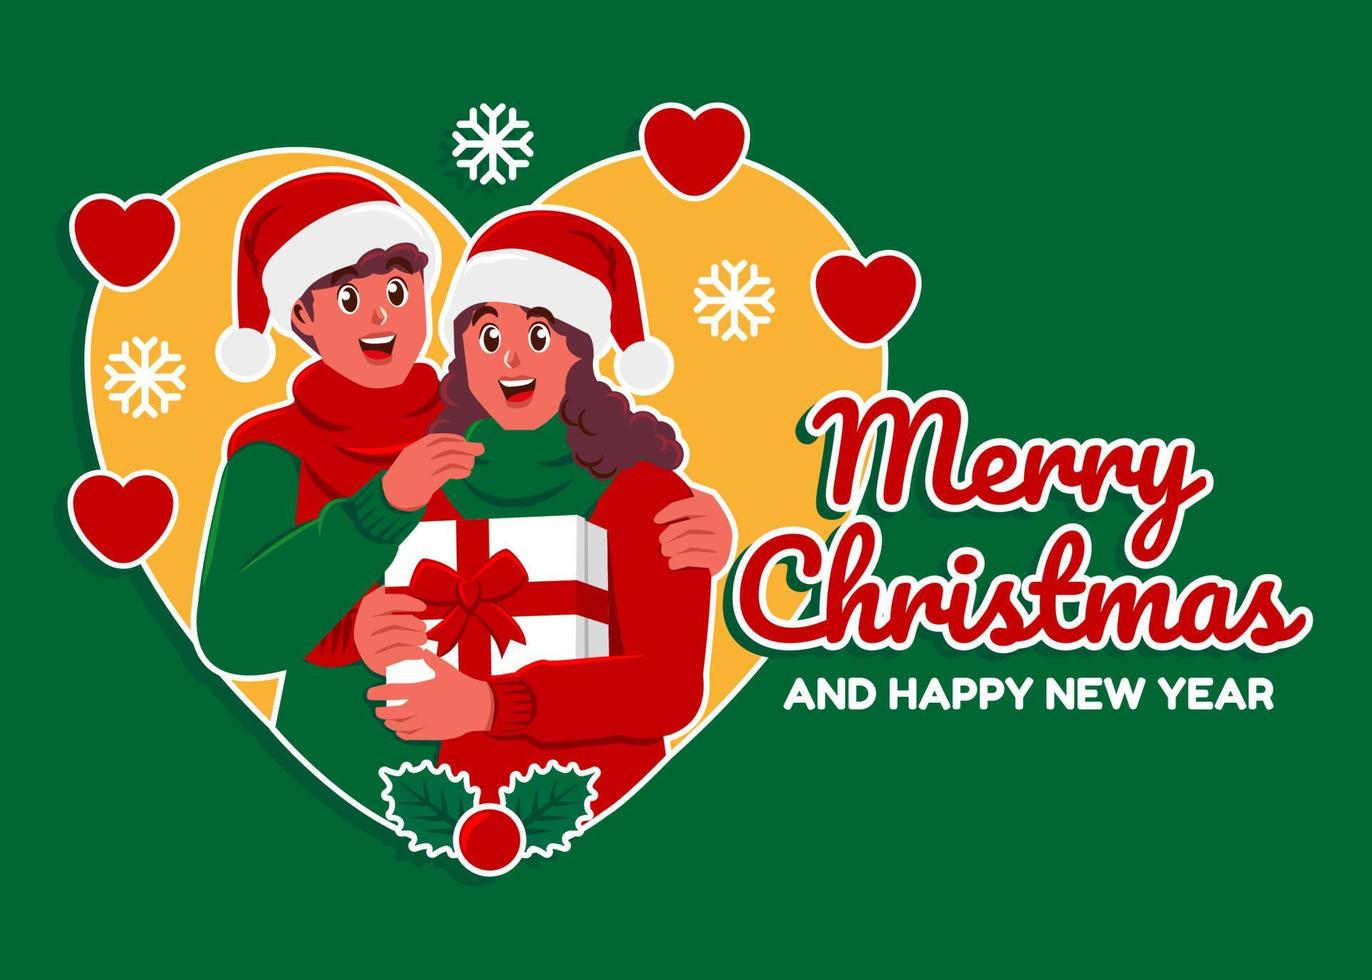 paar vieren kerstmis, vrolijk Kerstmis en gelukkig nieuw jaar groet kaarten vector